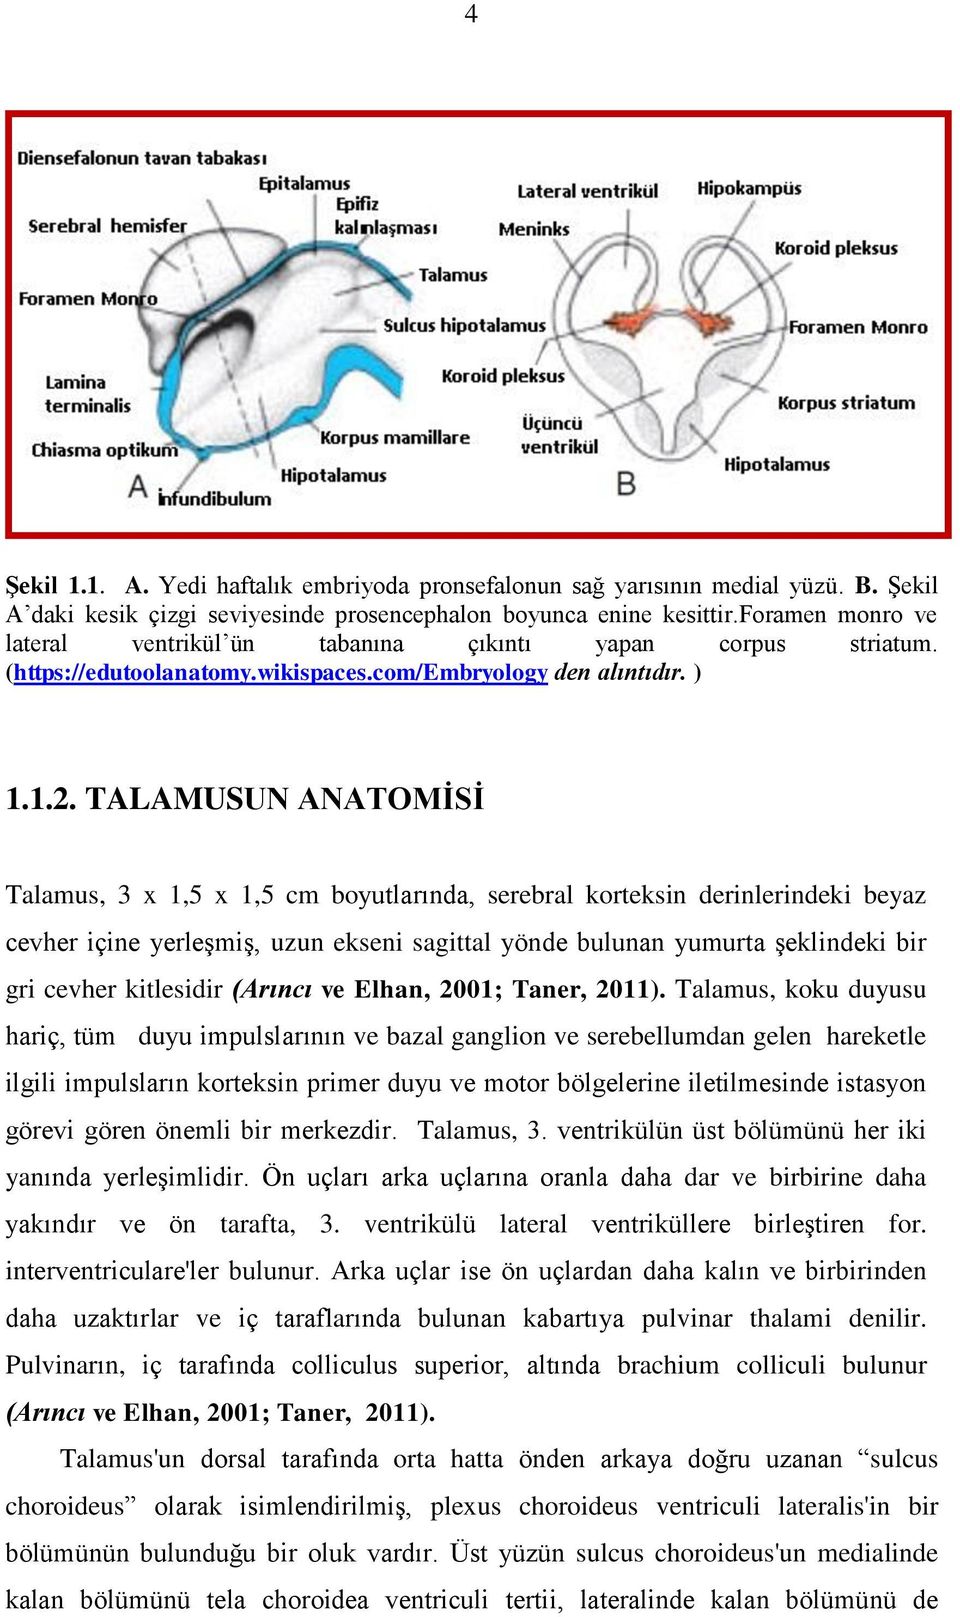 TALAMUSUN ANATOMĠSĠ Talamus, 3 x 1,5 x 1,5 cm boyutlarında, serebral korteksin derinlerindeki beyaz cevher içine yerleģmiģ, uzun ekseni sagittal yönde bulunan yumurta Ģeklindeki bir gri cevher